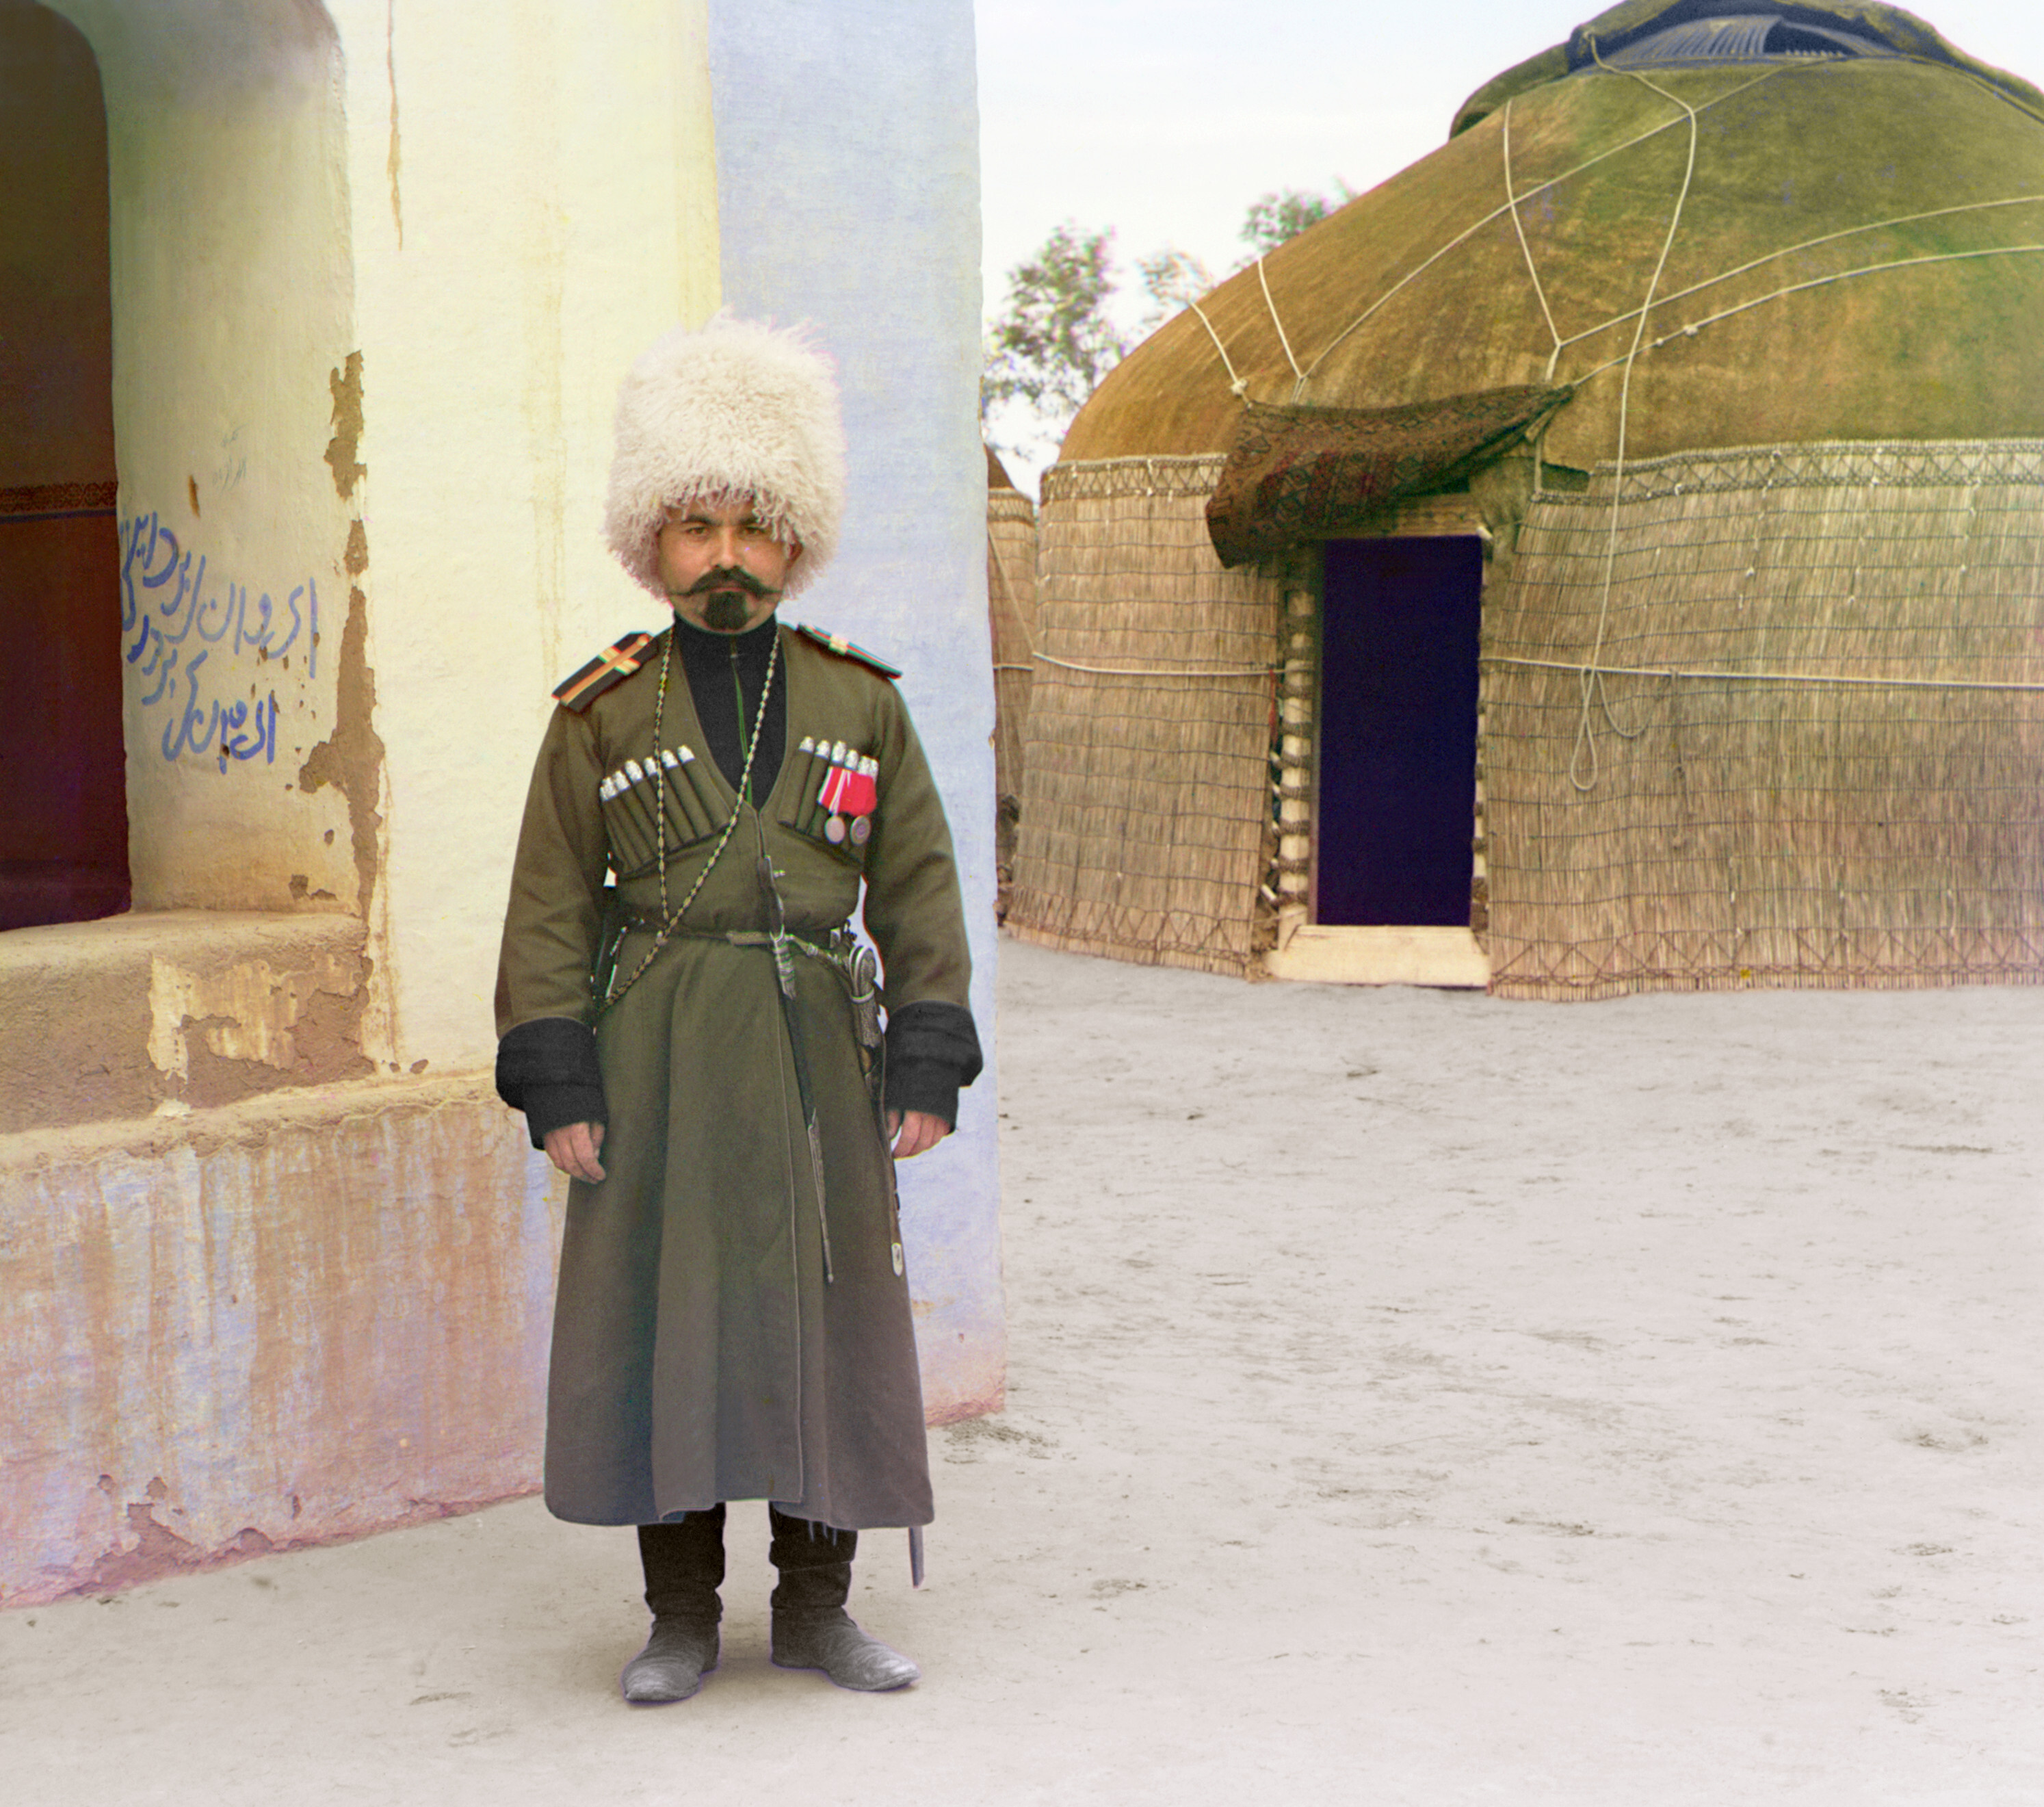 Человек в форме у здания, на заднем плане юрта, 1905-1915, фотограф Сергей Прокудин-Горский